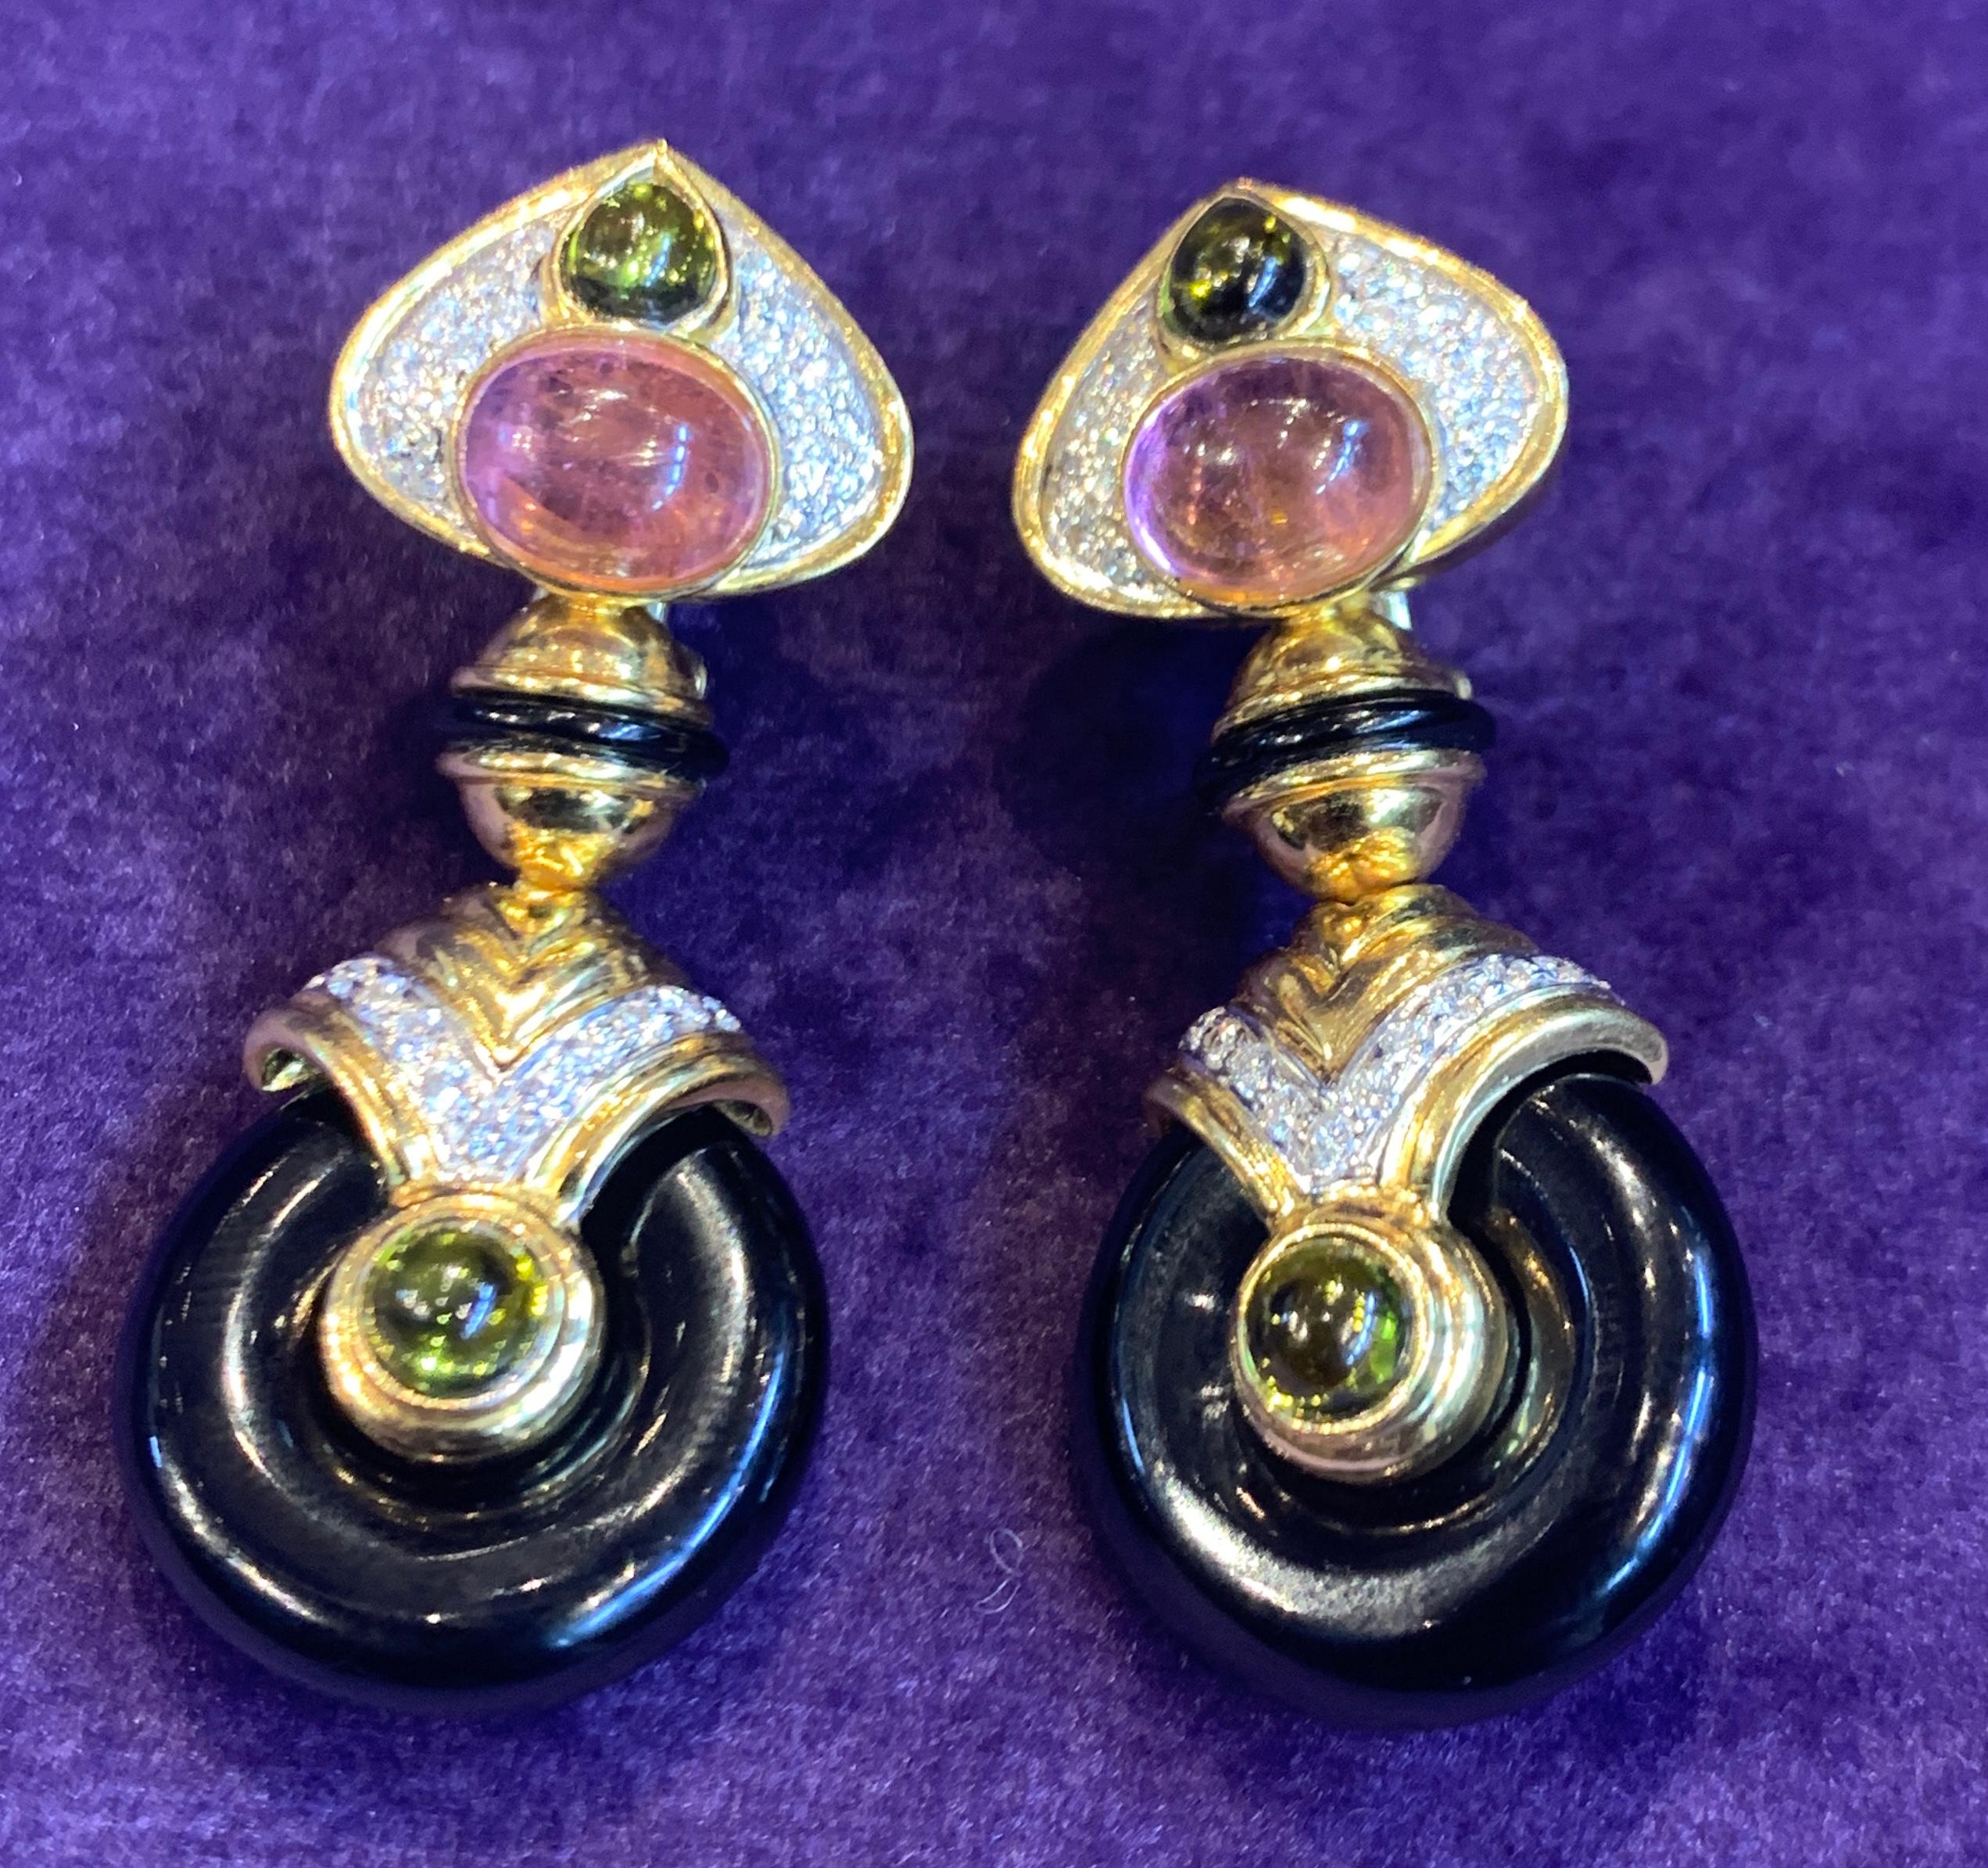 Multi Gem Gold Ohrringe mit 4 austauschbaren Tropfen  einschließlich  amethyst, Onyx, Citrin und Perlmutt
Abmessungen: 1.75